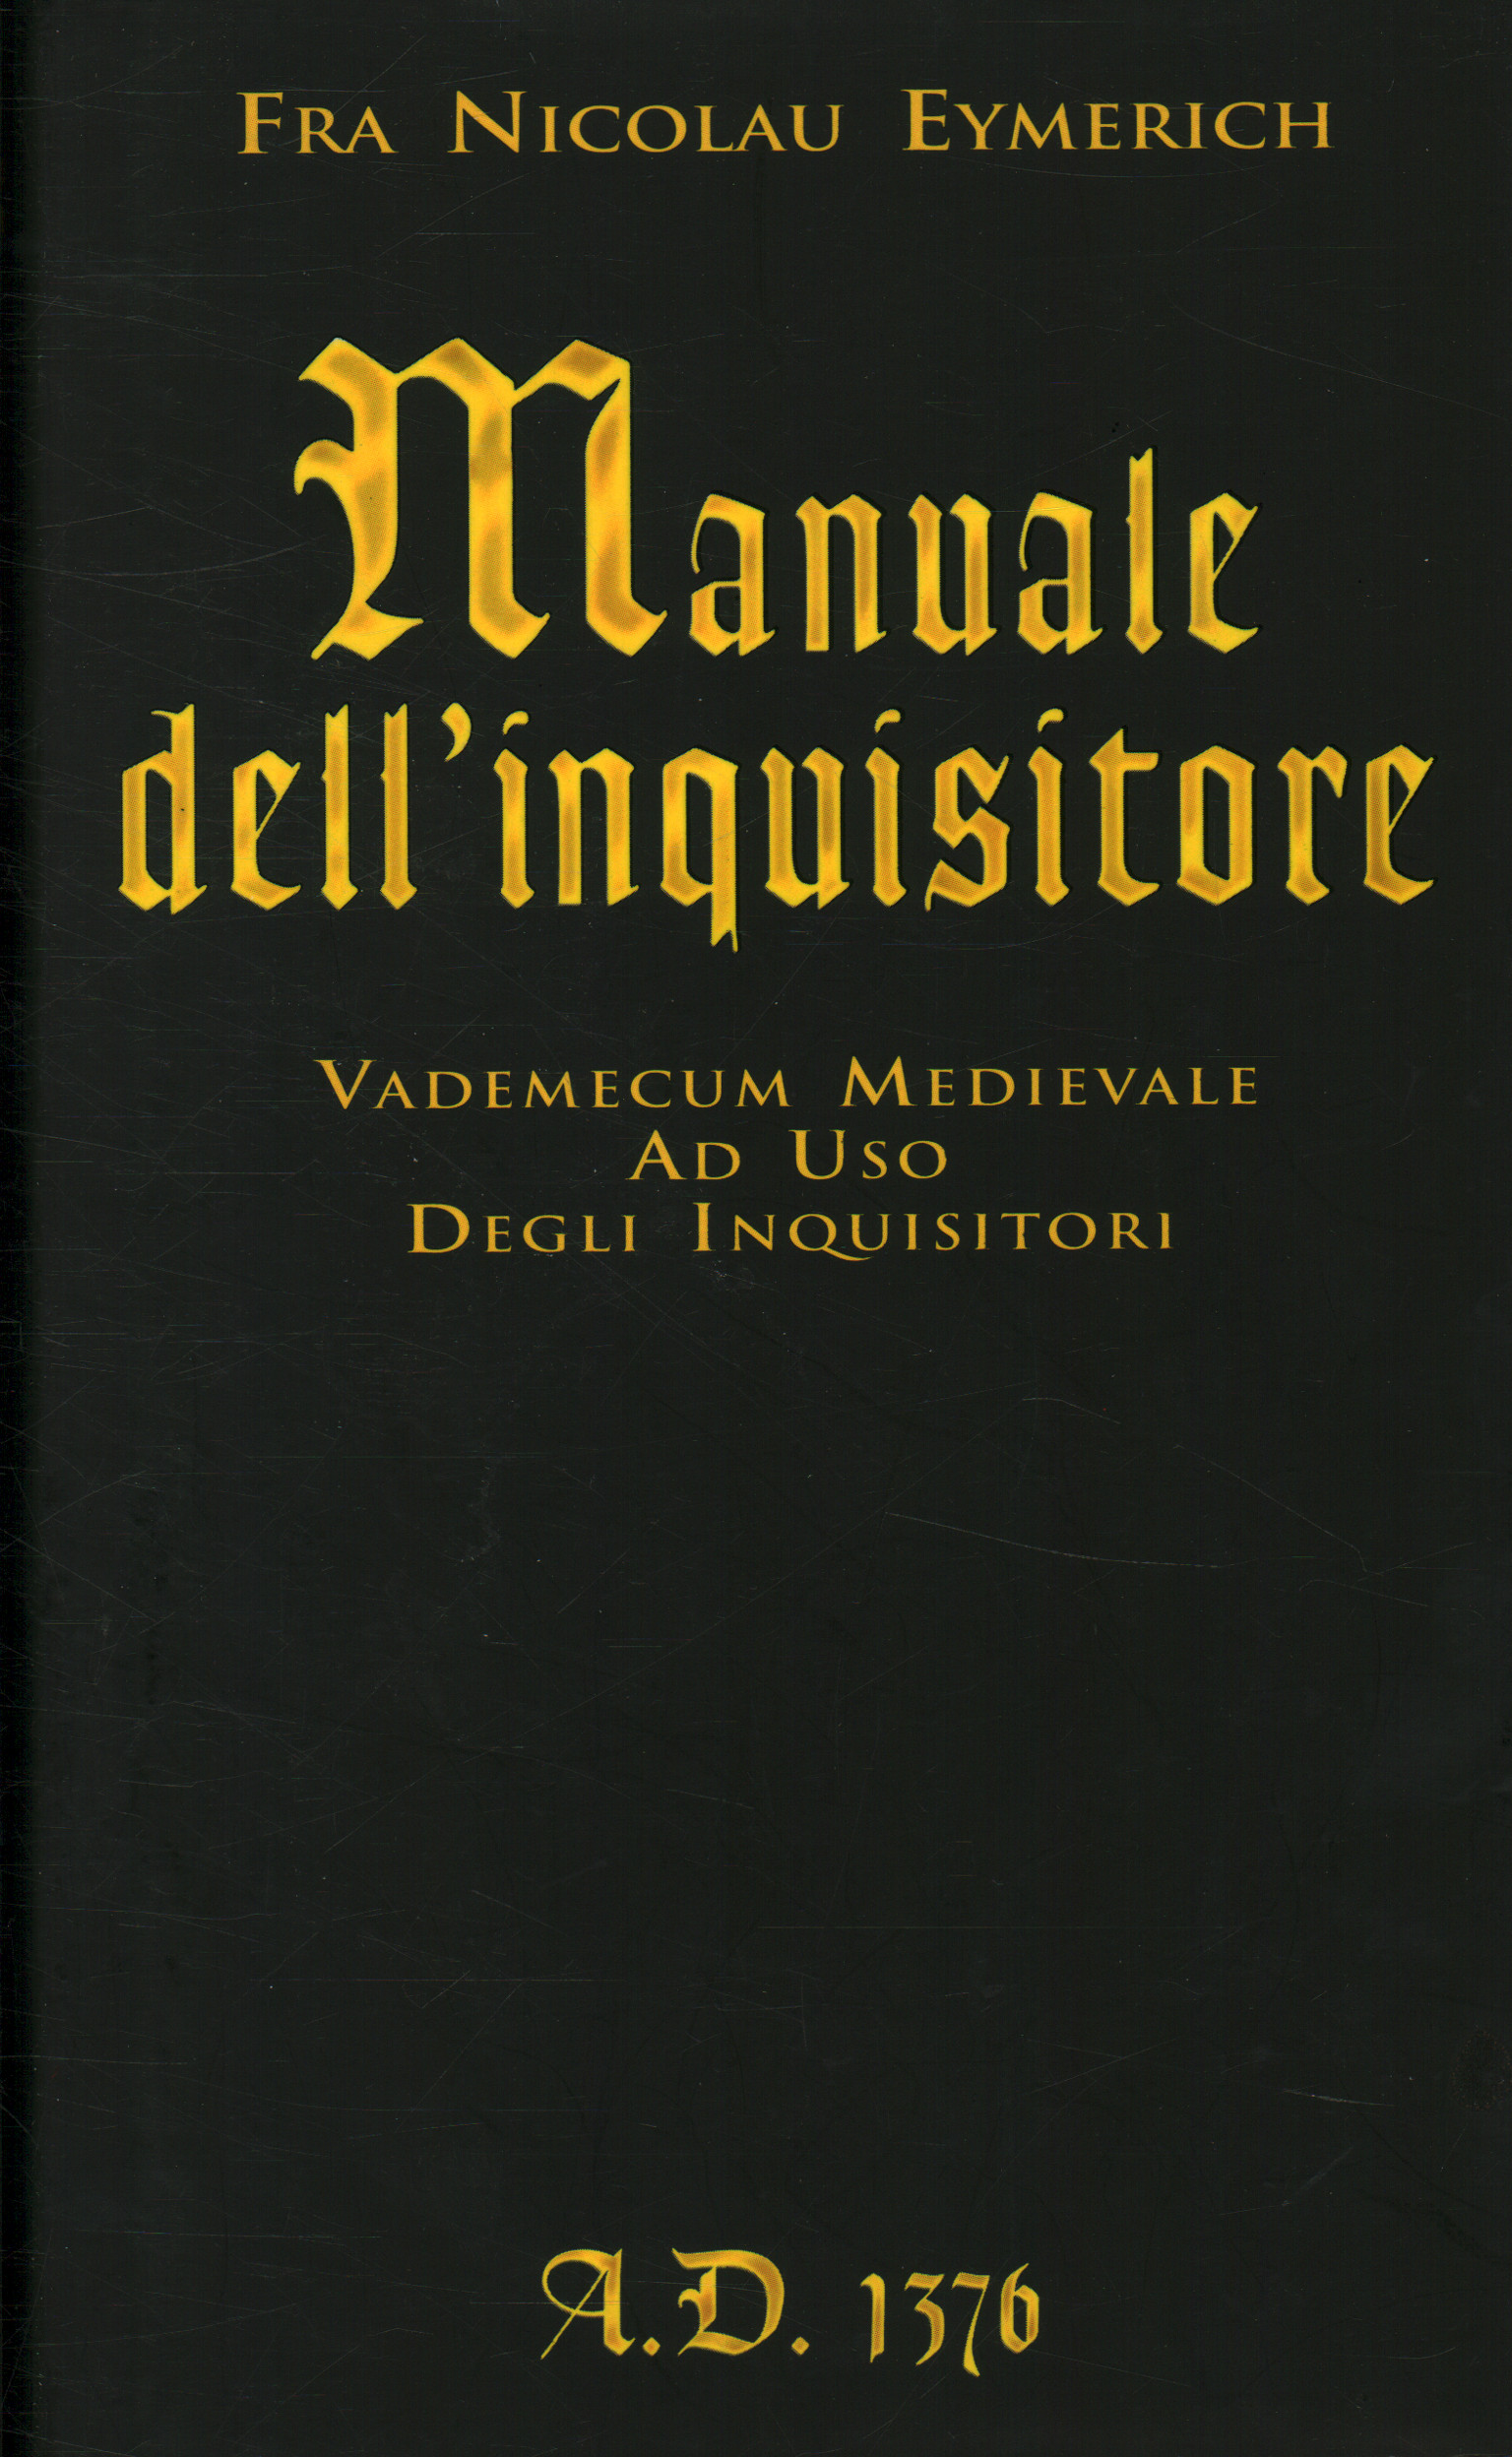 Handbuch des Inquisitors A.D. 137